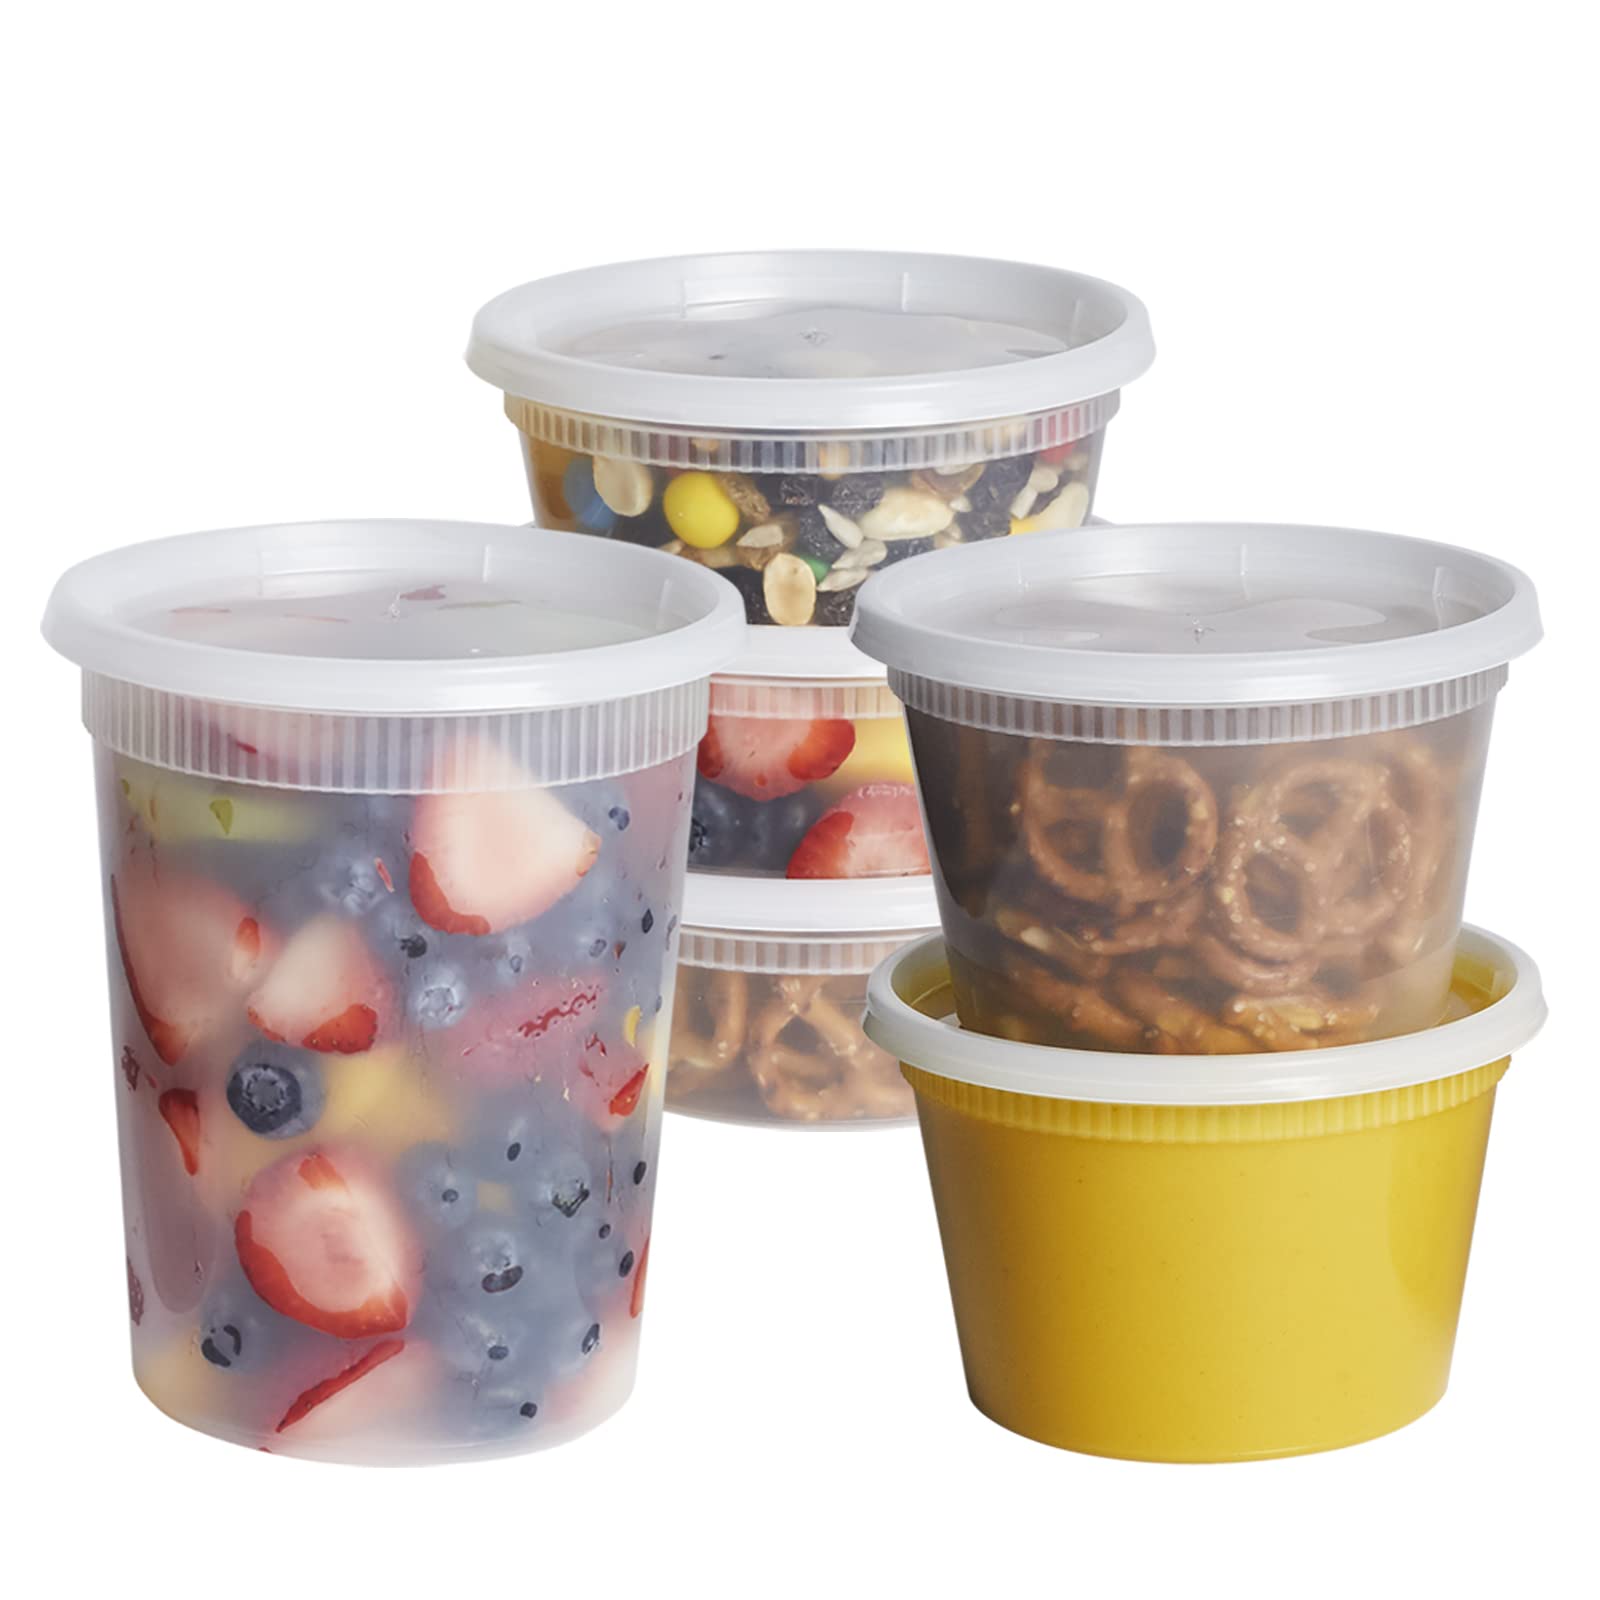 32oz Plastic Soup Container (240pcs)